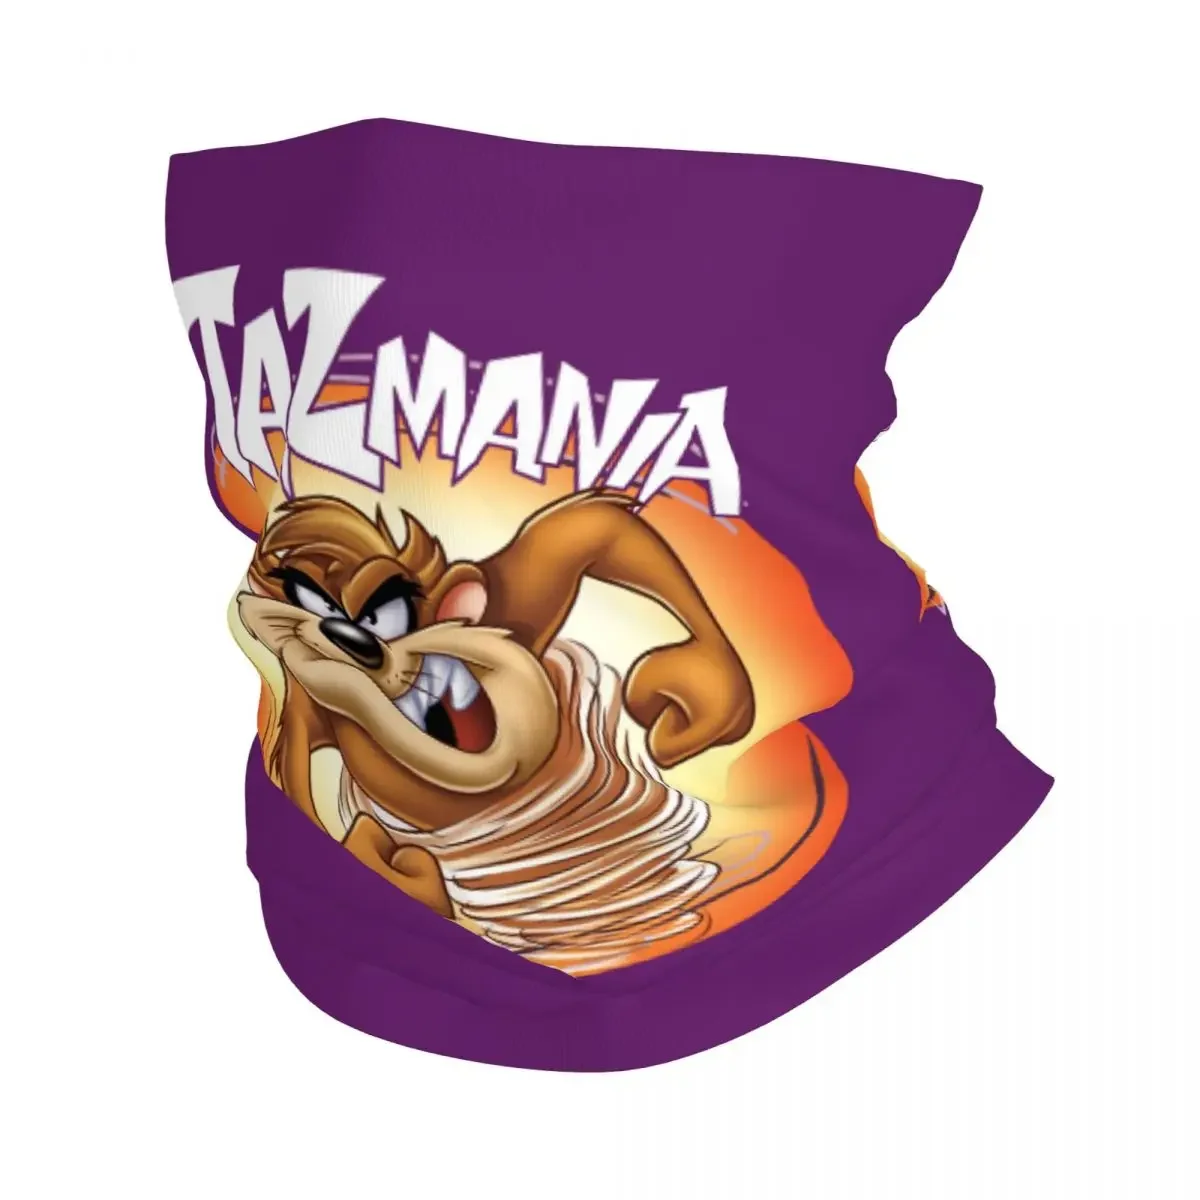 

Бандана Taz Mania с дьяволом, шарф-гетра для походов и кемпинга, мультяшный комикс, обогреватель